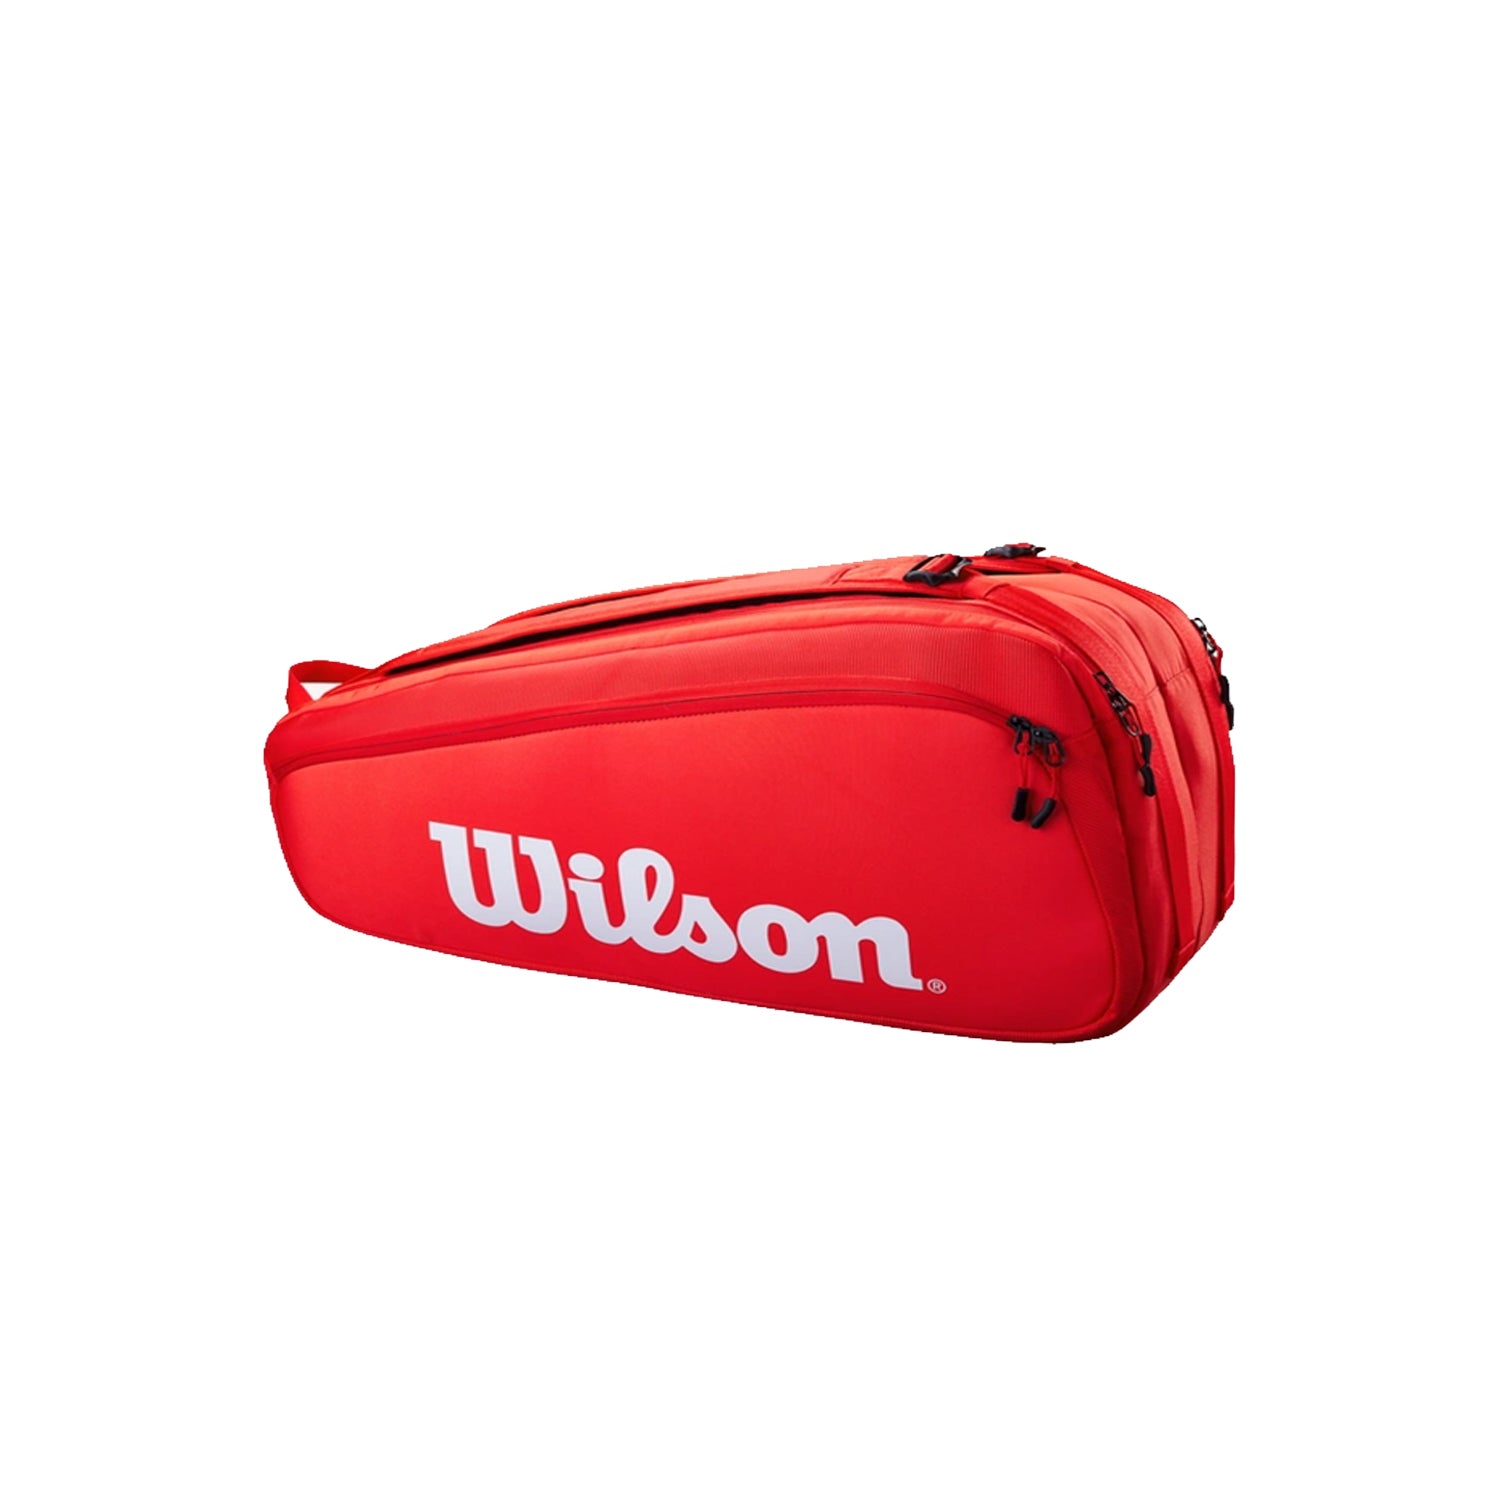 Wilson Super Tour 9 Pack Racquet Bag, Red - Best Price online Prokicksports.com